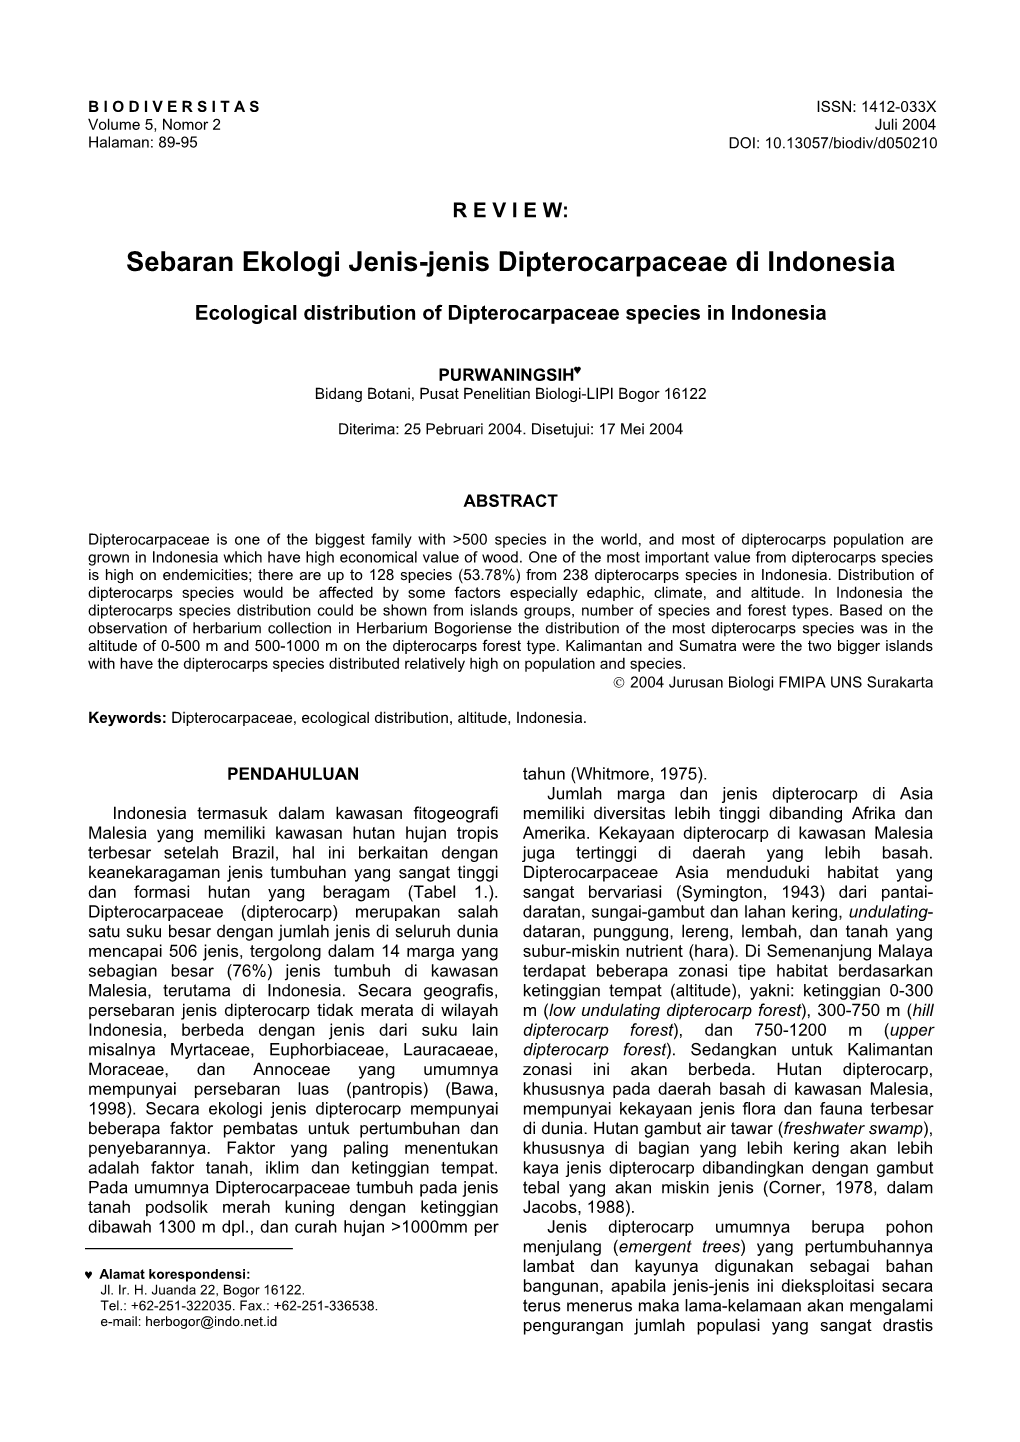 Sebaran Ekologi Jenis-Jenis Dipterocarpaceae Di Indonesia